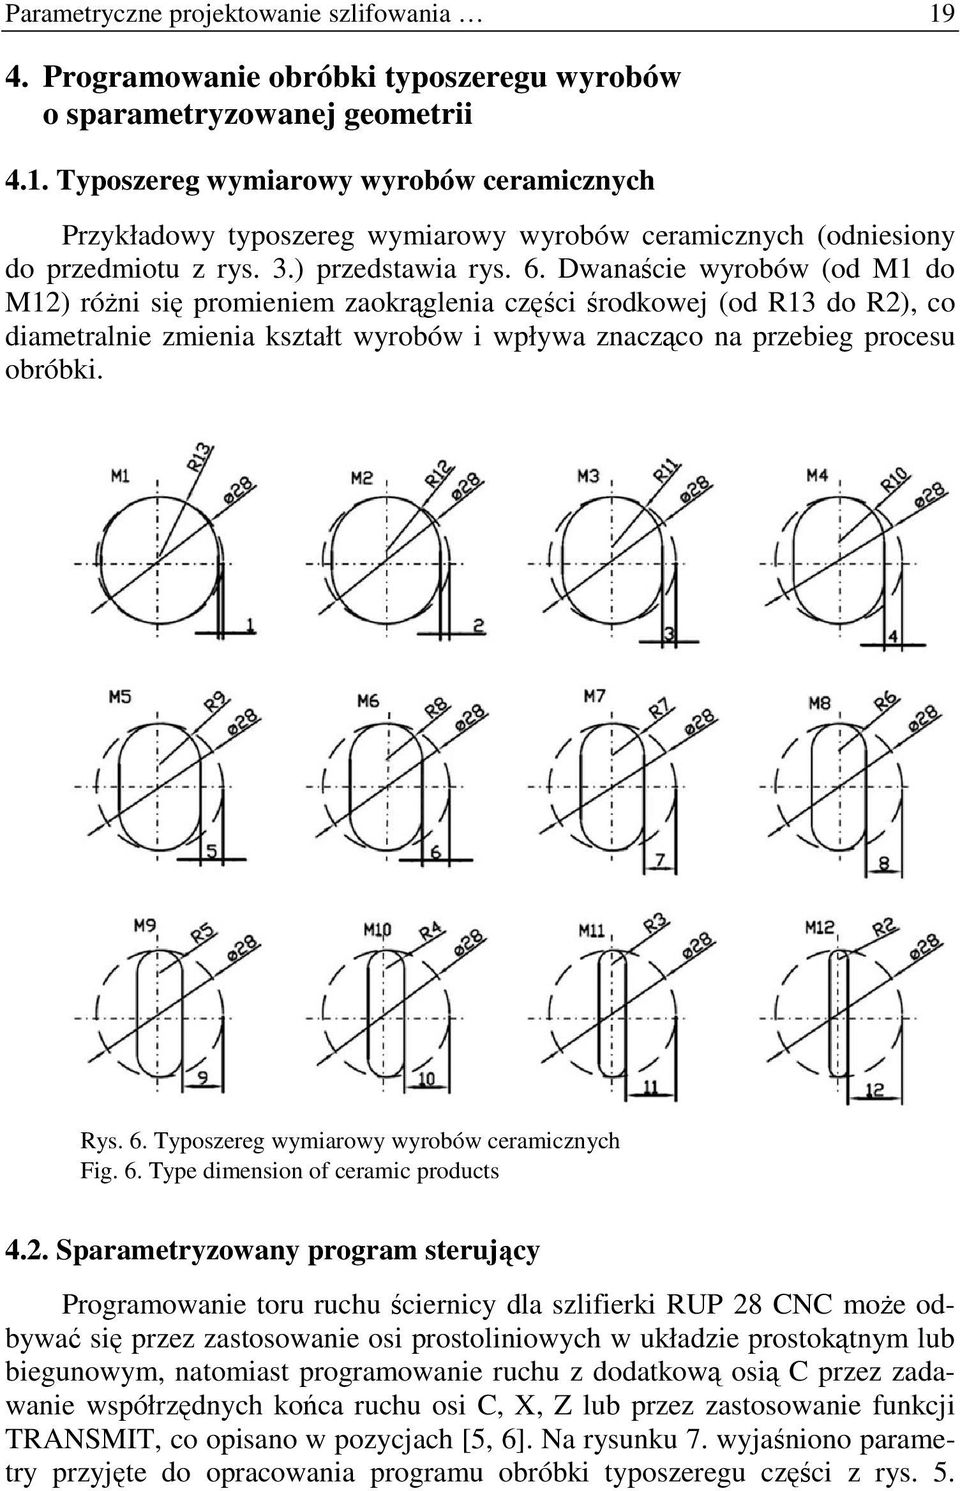 Dwanaście wyrobów (od M1 do M12) róŝni się promieniem zaokrąglenia części środkowej (od R13 do R2), co diametralnie zmienia kształt wyrobów i wpływa znacząco na przebieg procesu obróbki. Rys. 6.